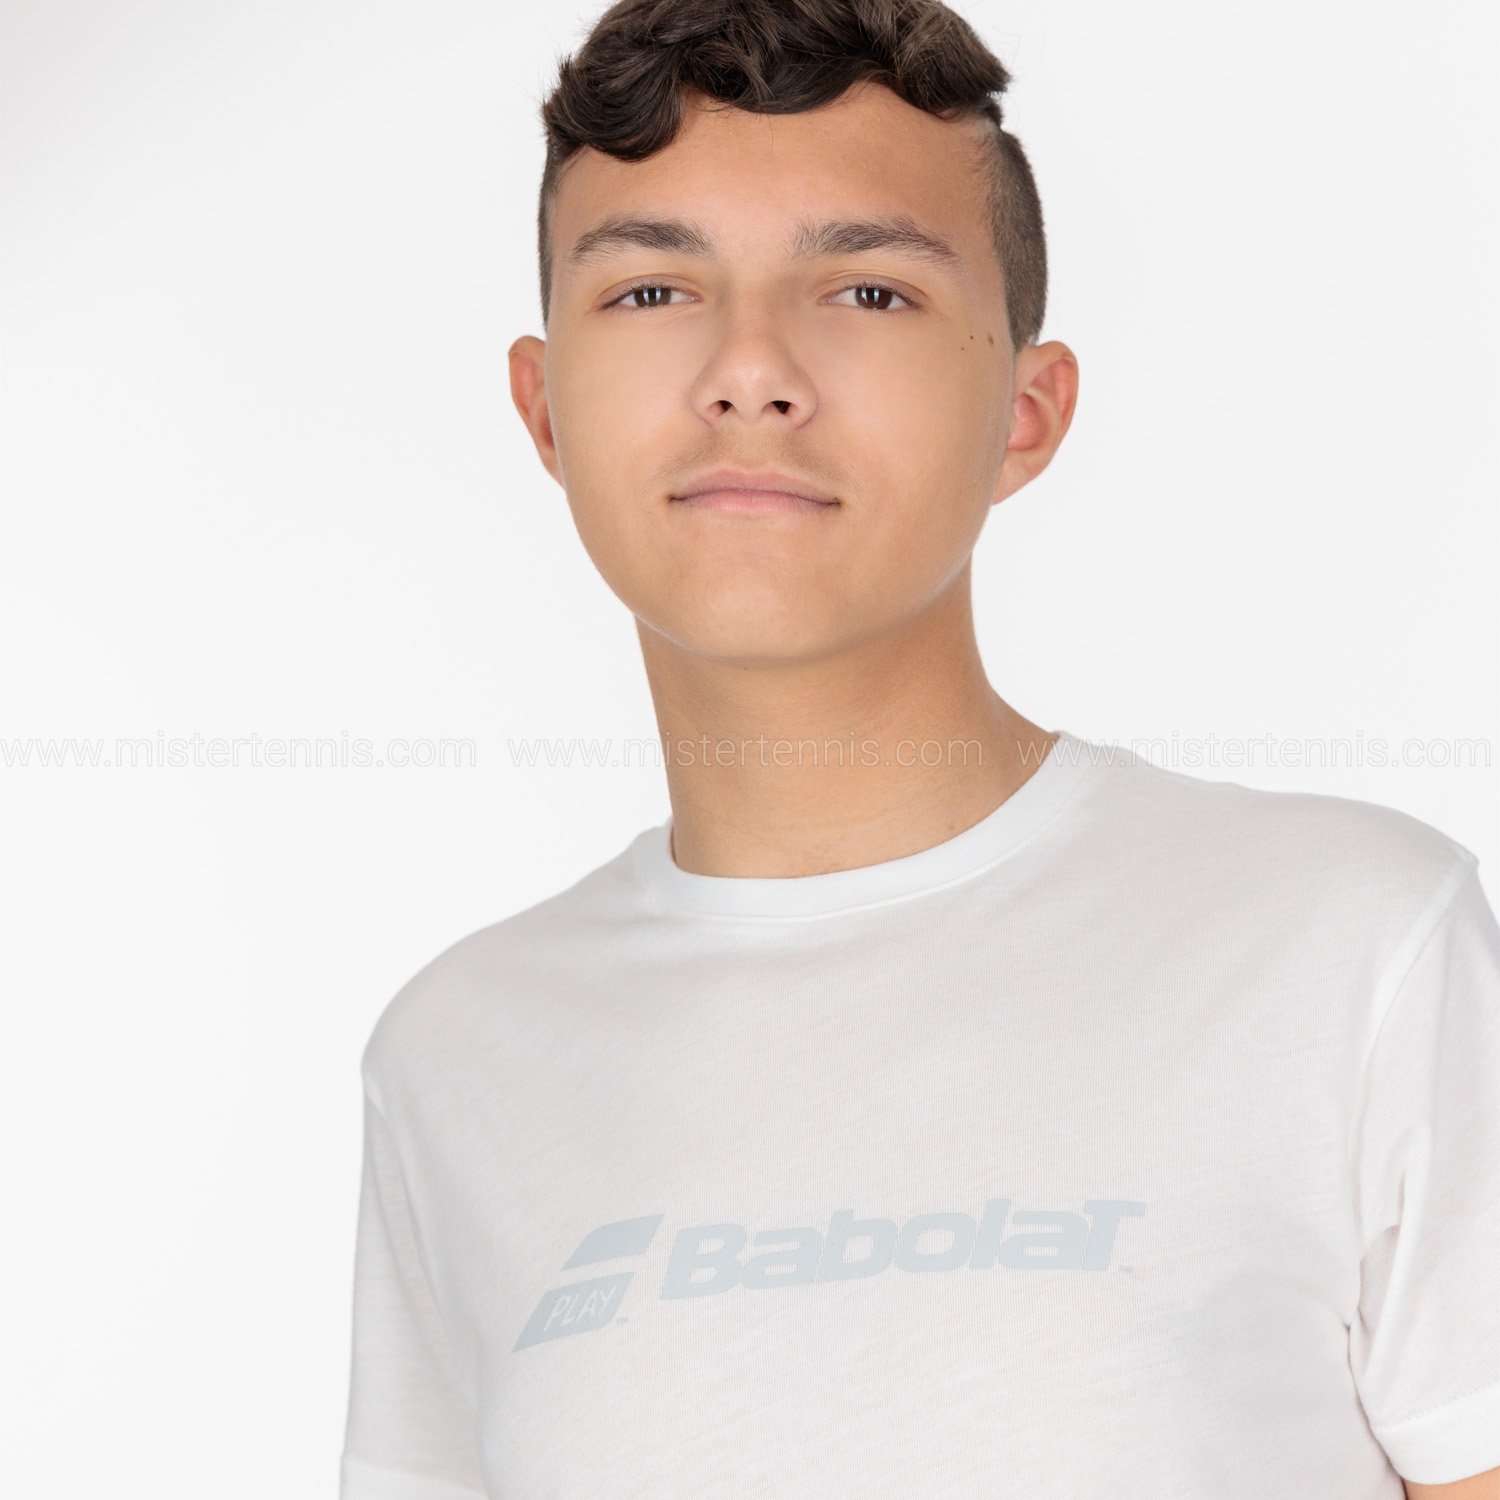 Babolat Exercise T-Shirt Boy - White